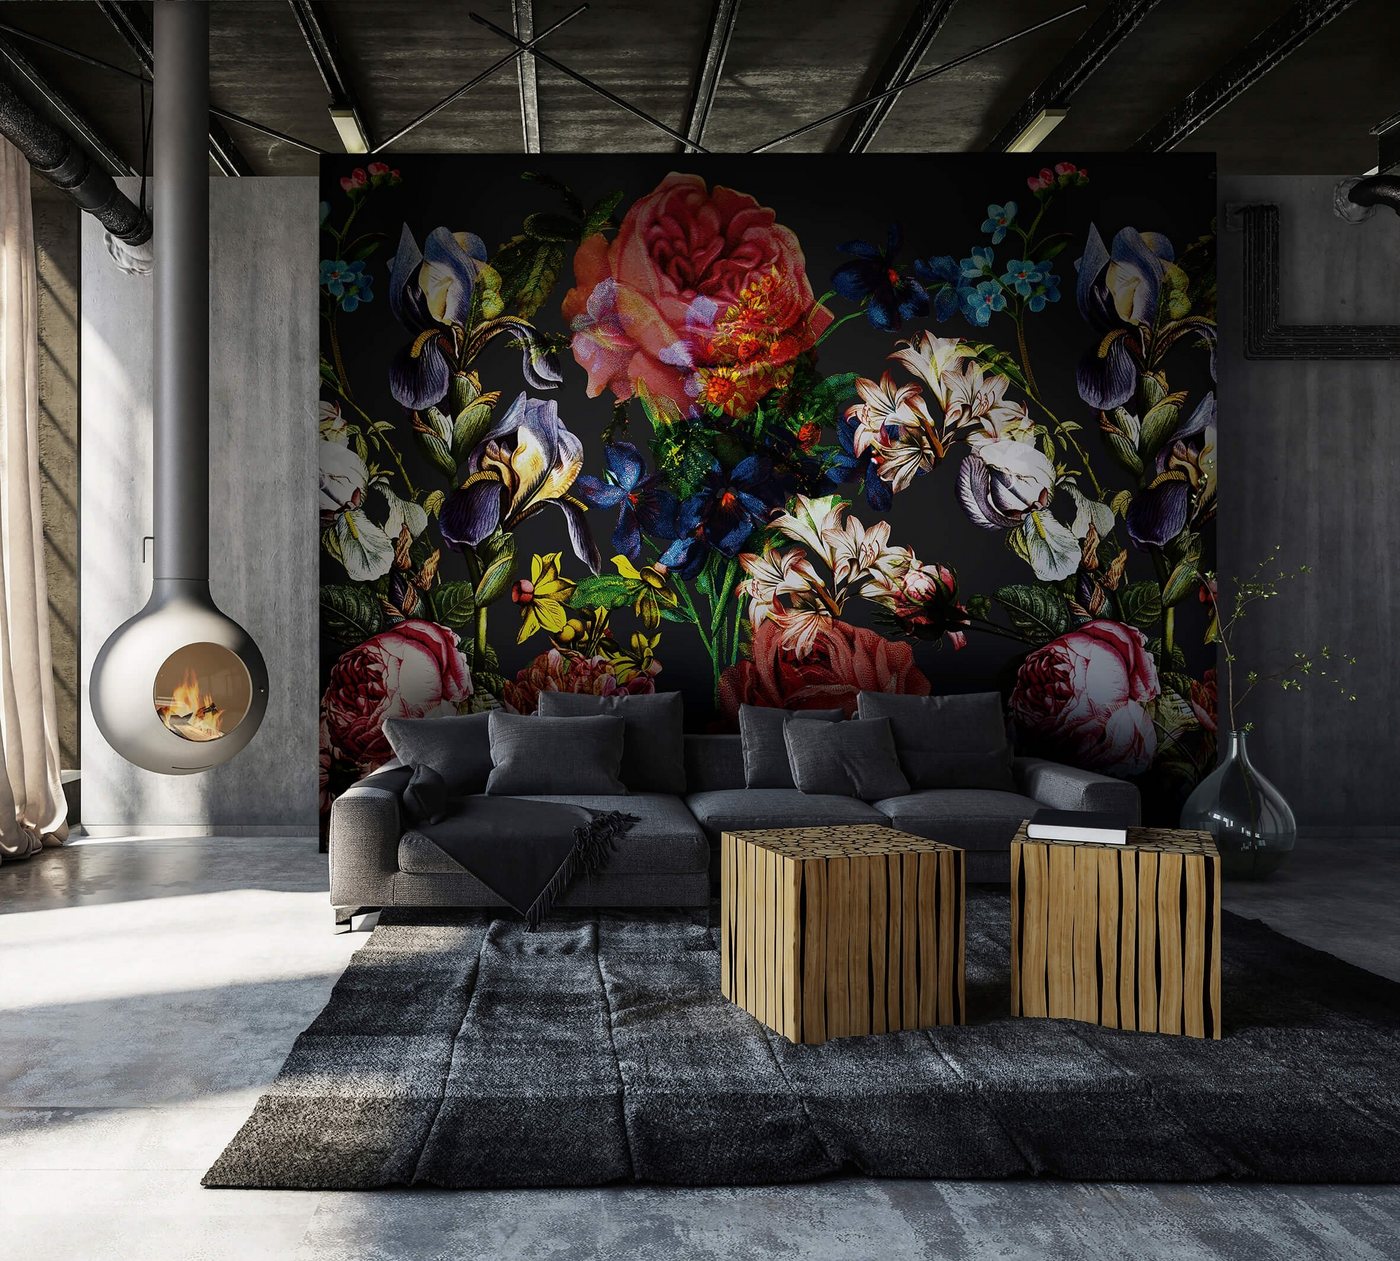 Newroom Vliestapete, [ 2,7 x 2,65m ] großzügiges Motiv - kein wiederkehrendes Muster - nahtlos große Flächen möglich - Fototapete Wandbild Blumen Rose Made in Germany von Newroom